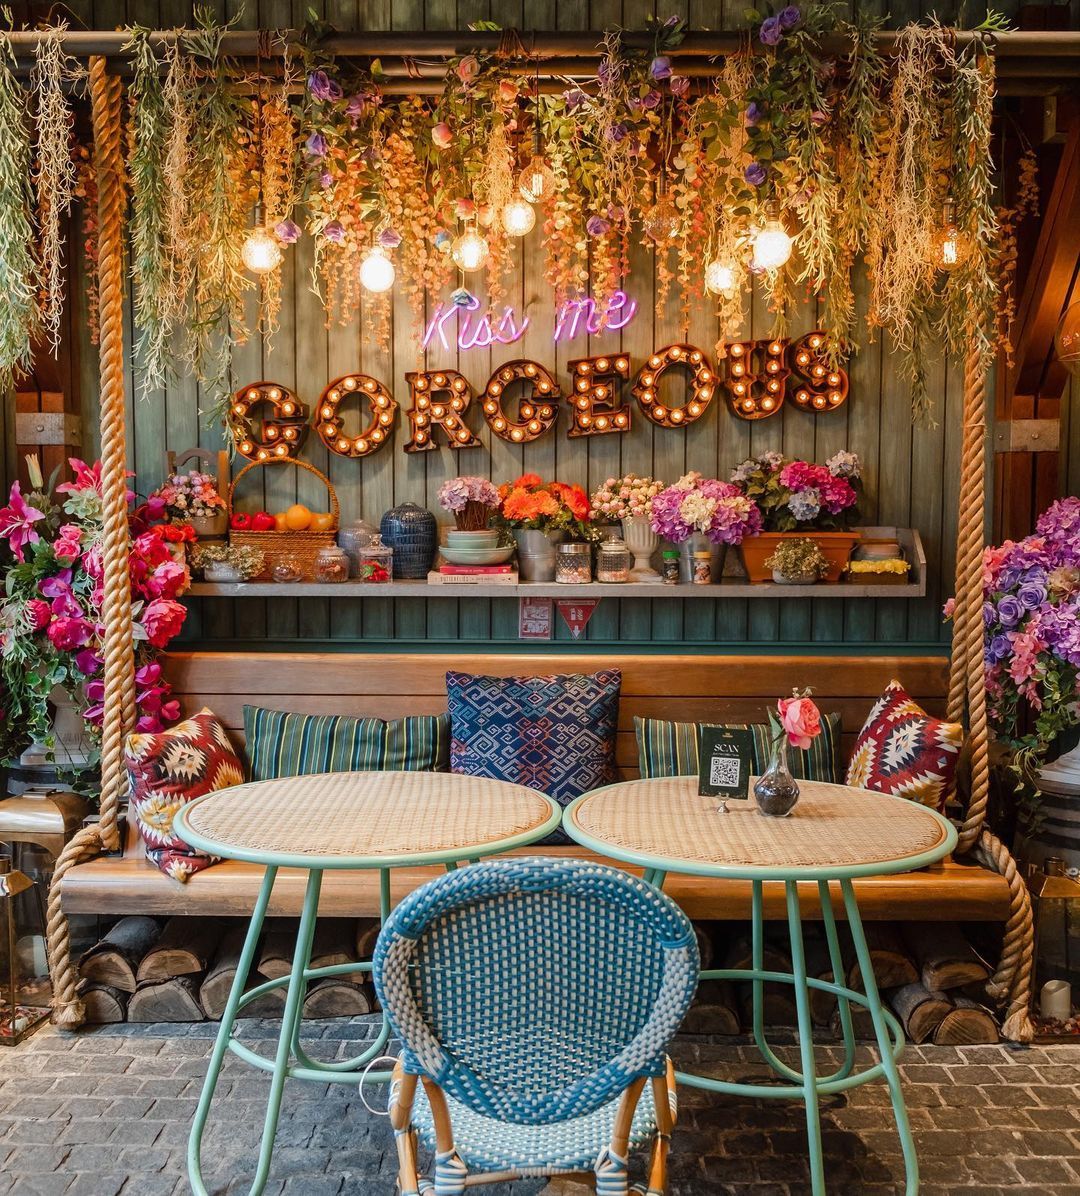 5 Kafe Tema Bunga yang Cantik, Cocok Buat Makan Enak Plus Foto-foto!